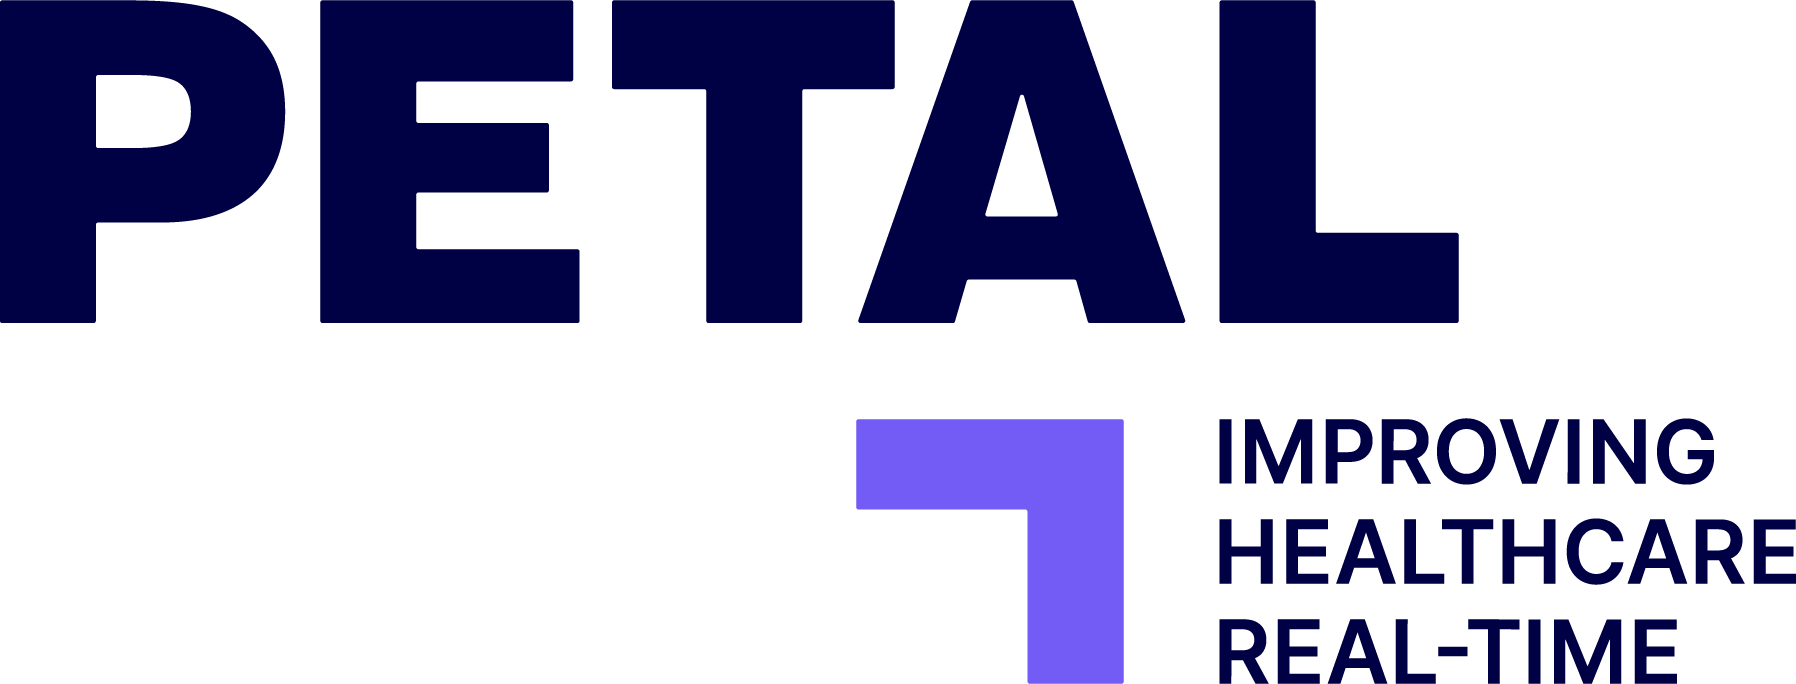 petal officiel logo full color rgb